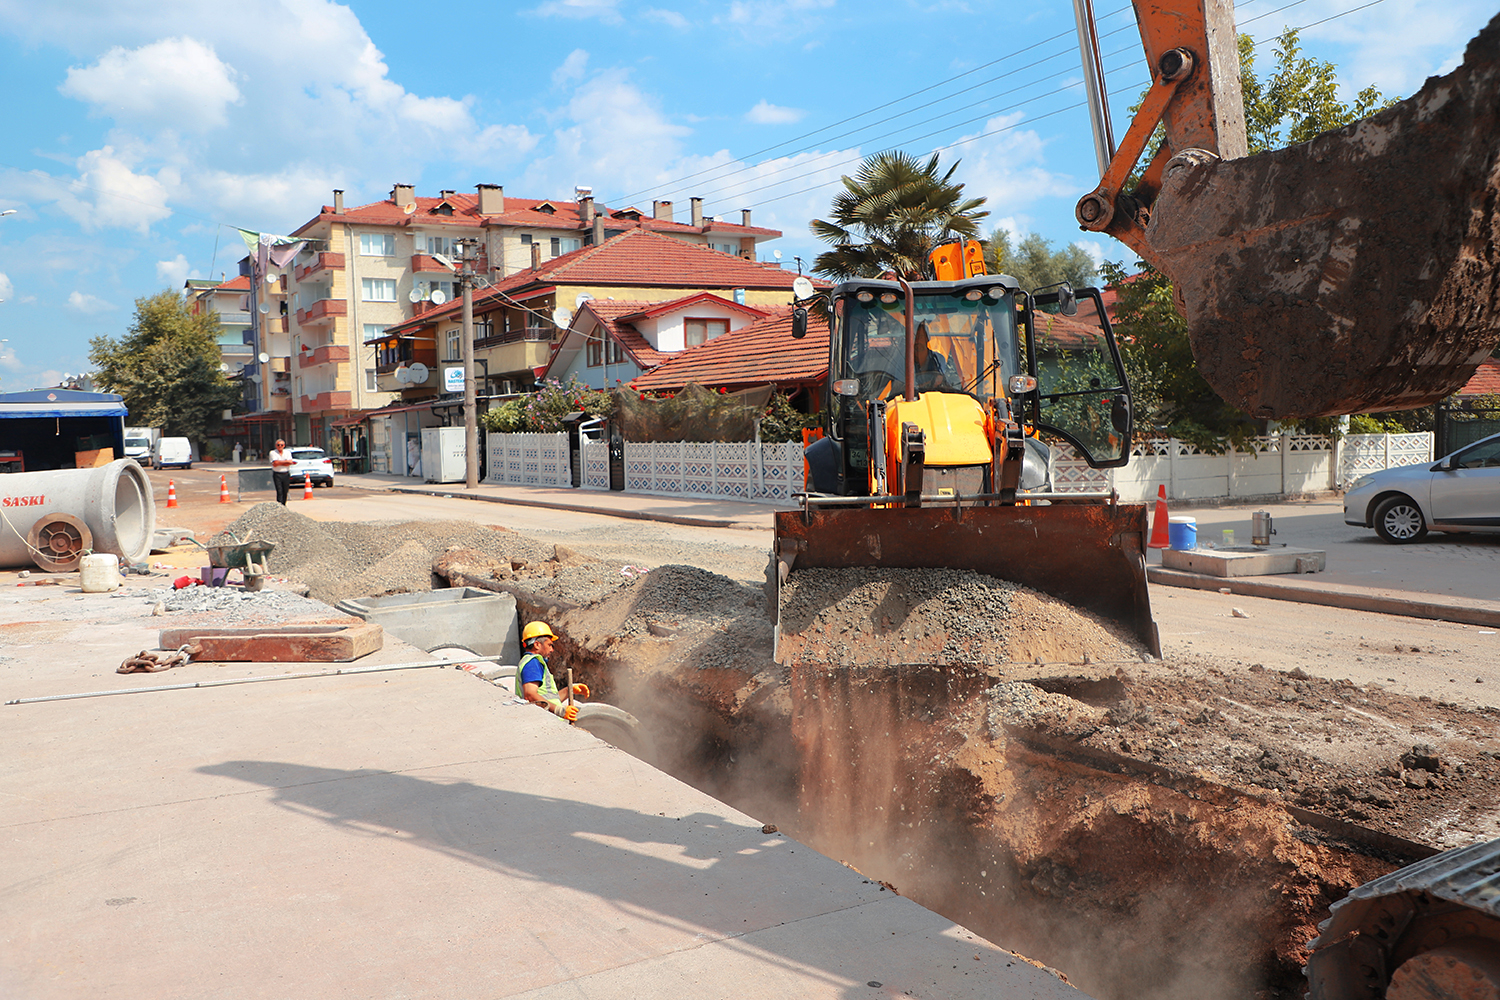 Dilmen ve Hacıoğlu Mahallesi'nin altyapısı geleceğe hazırlanıyor